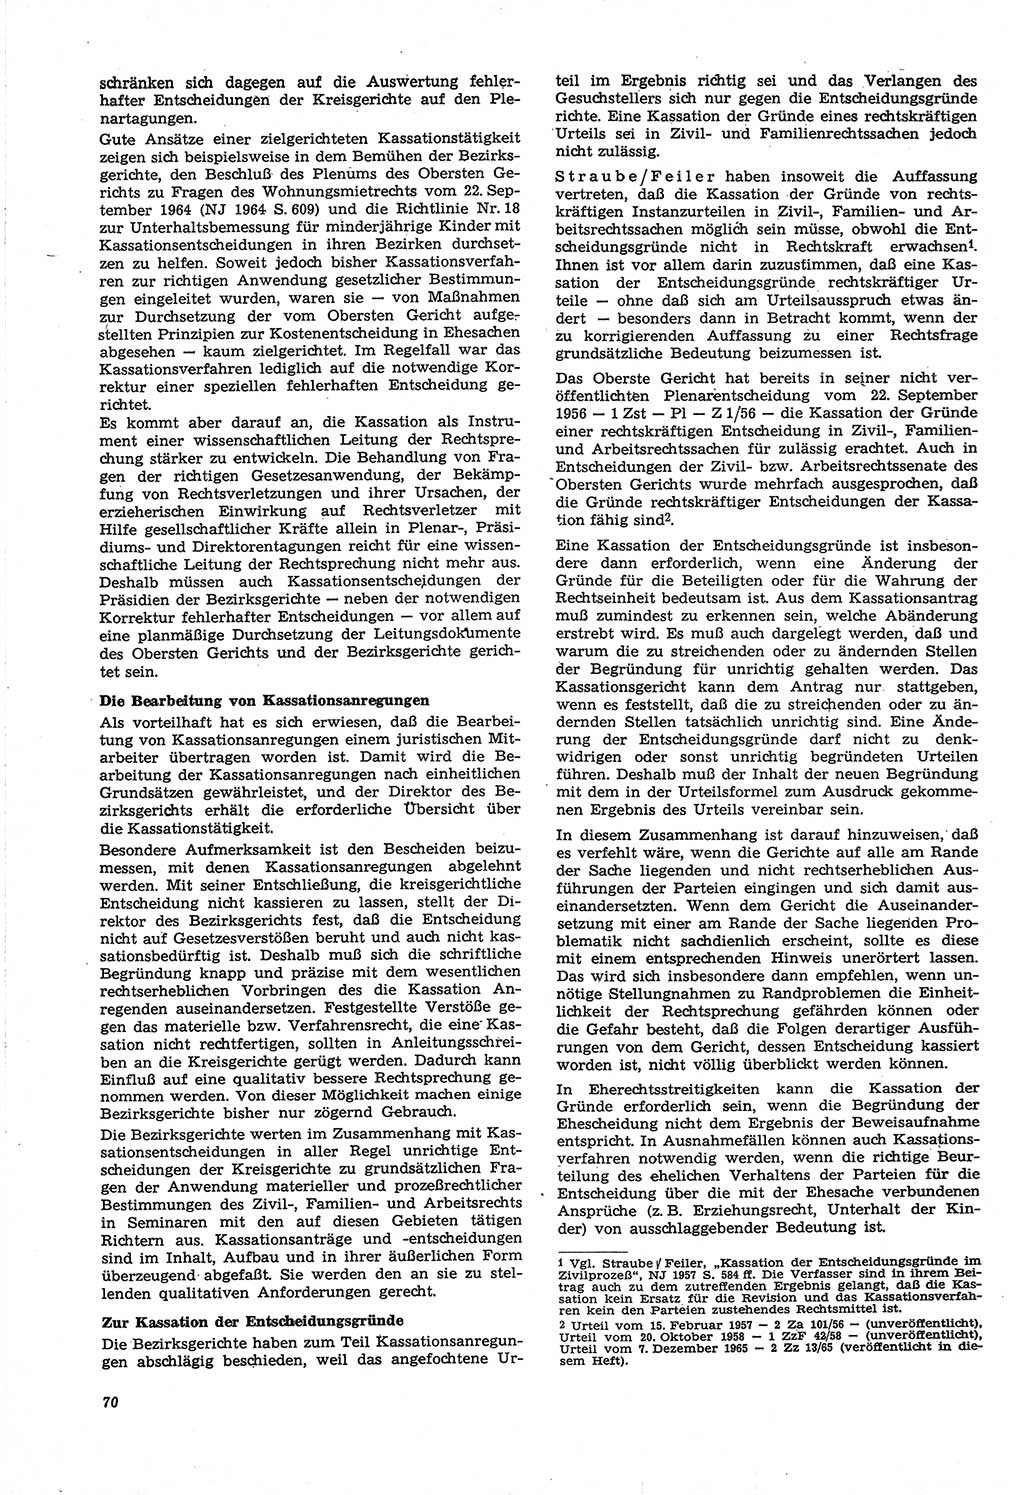 Neue Justiz (NJ), Zeitschrift für Recht und Rechtswissenschaft [Deutsche Demokratische Republik (DDR)], 21. Jahrgang 1967, Seite 70 (NJ DDR 1967, S. 70)